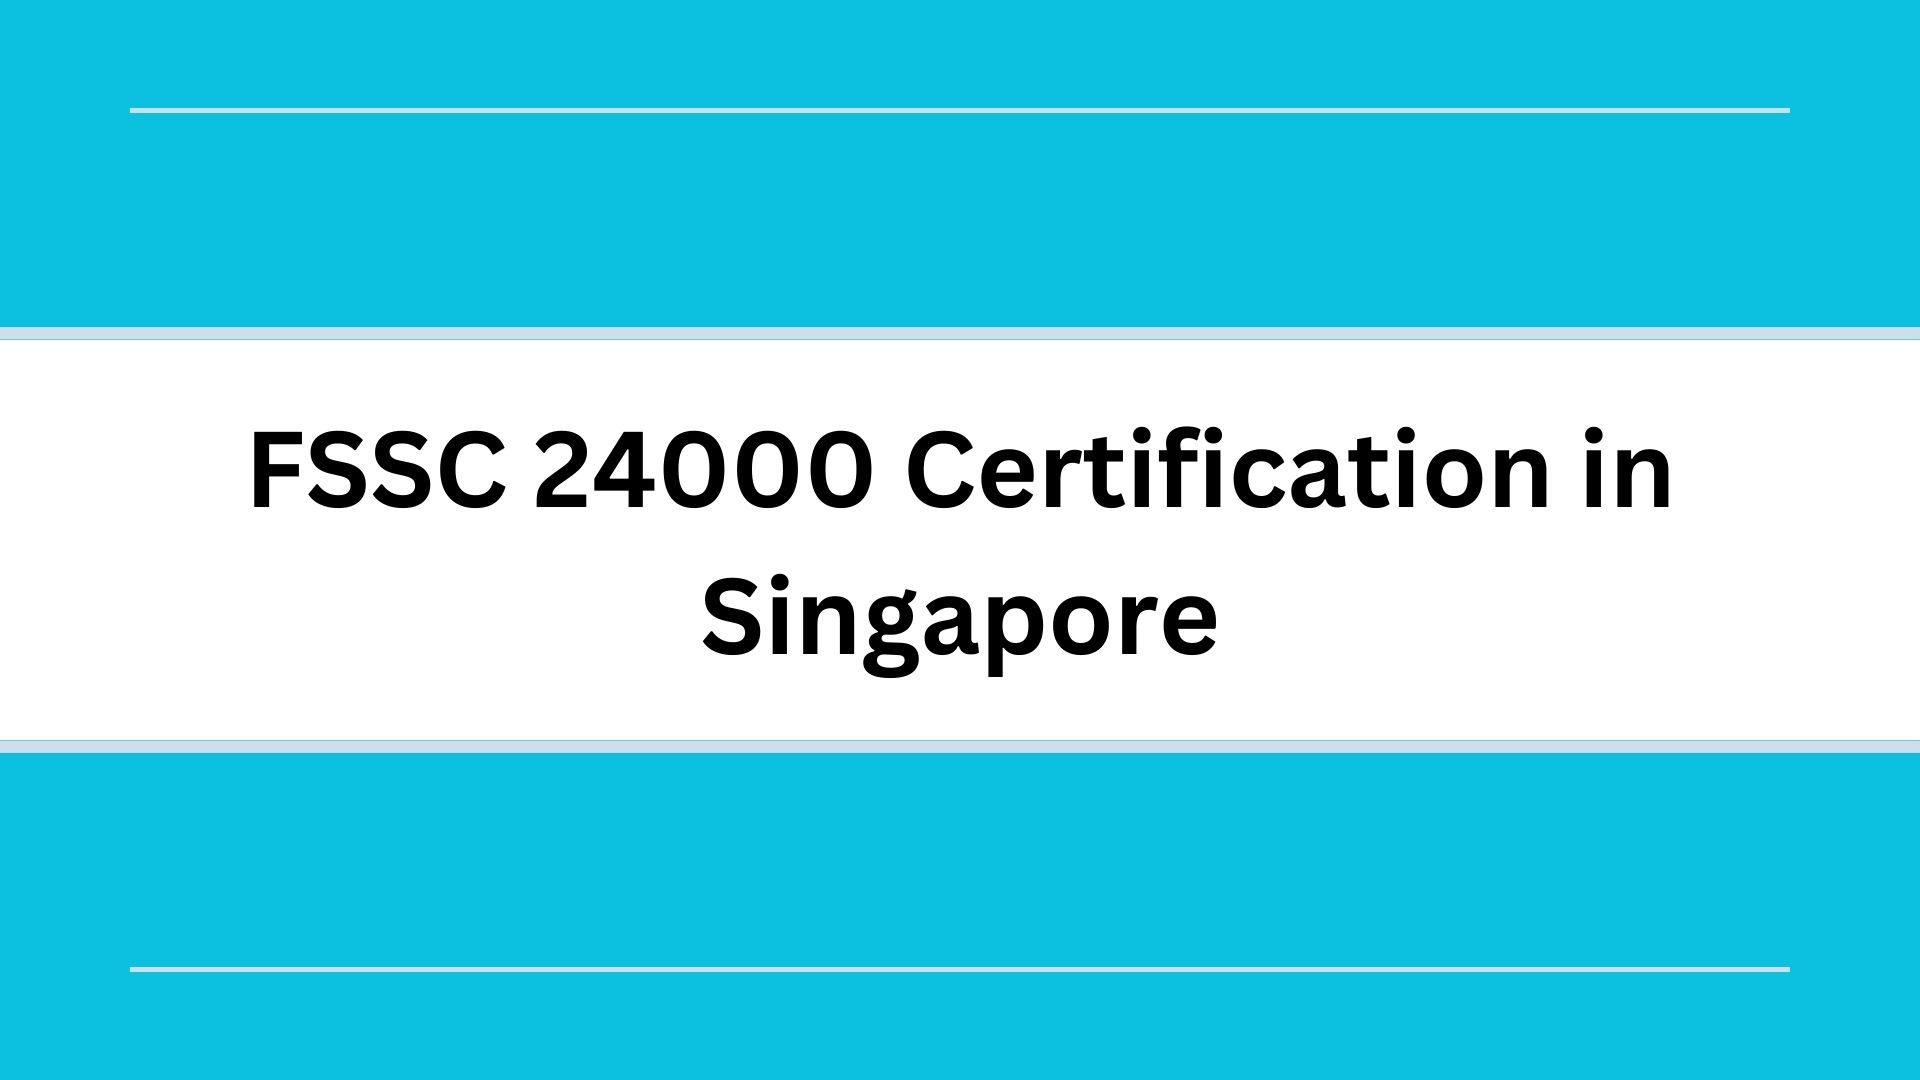 FSSC 24000 certification in Singapore